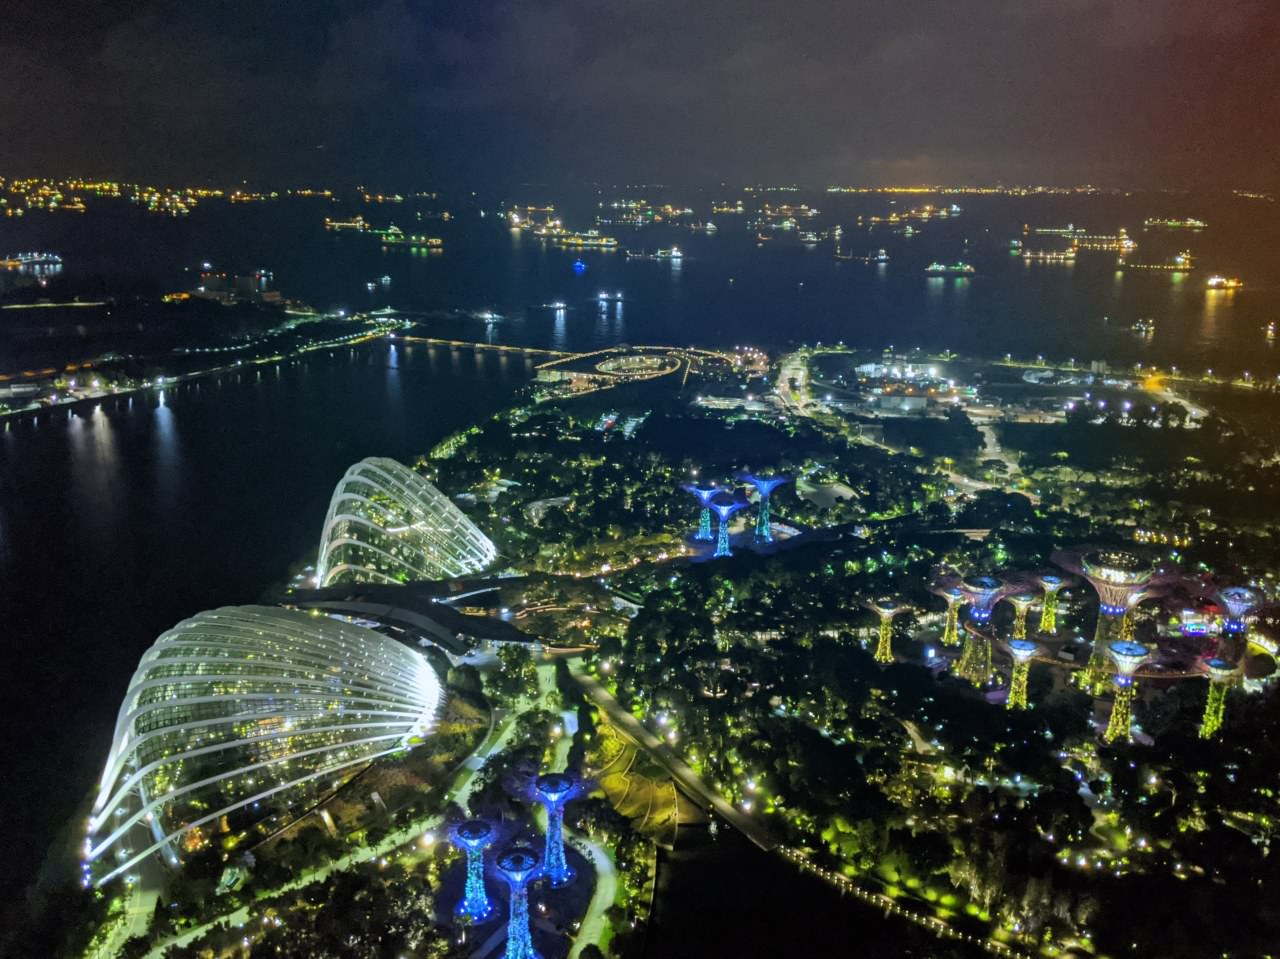 新加坡 金沙灣酒店 Marina Bay Sands Singapore 入住新加坡地標建築 地點便利盡享精華景點